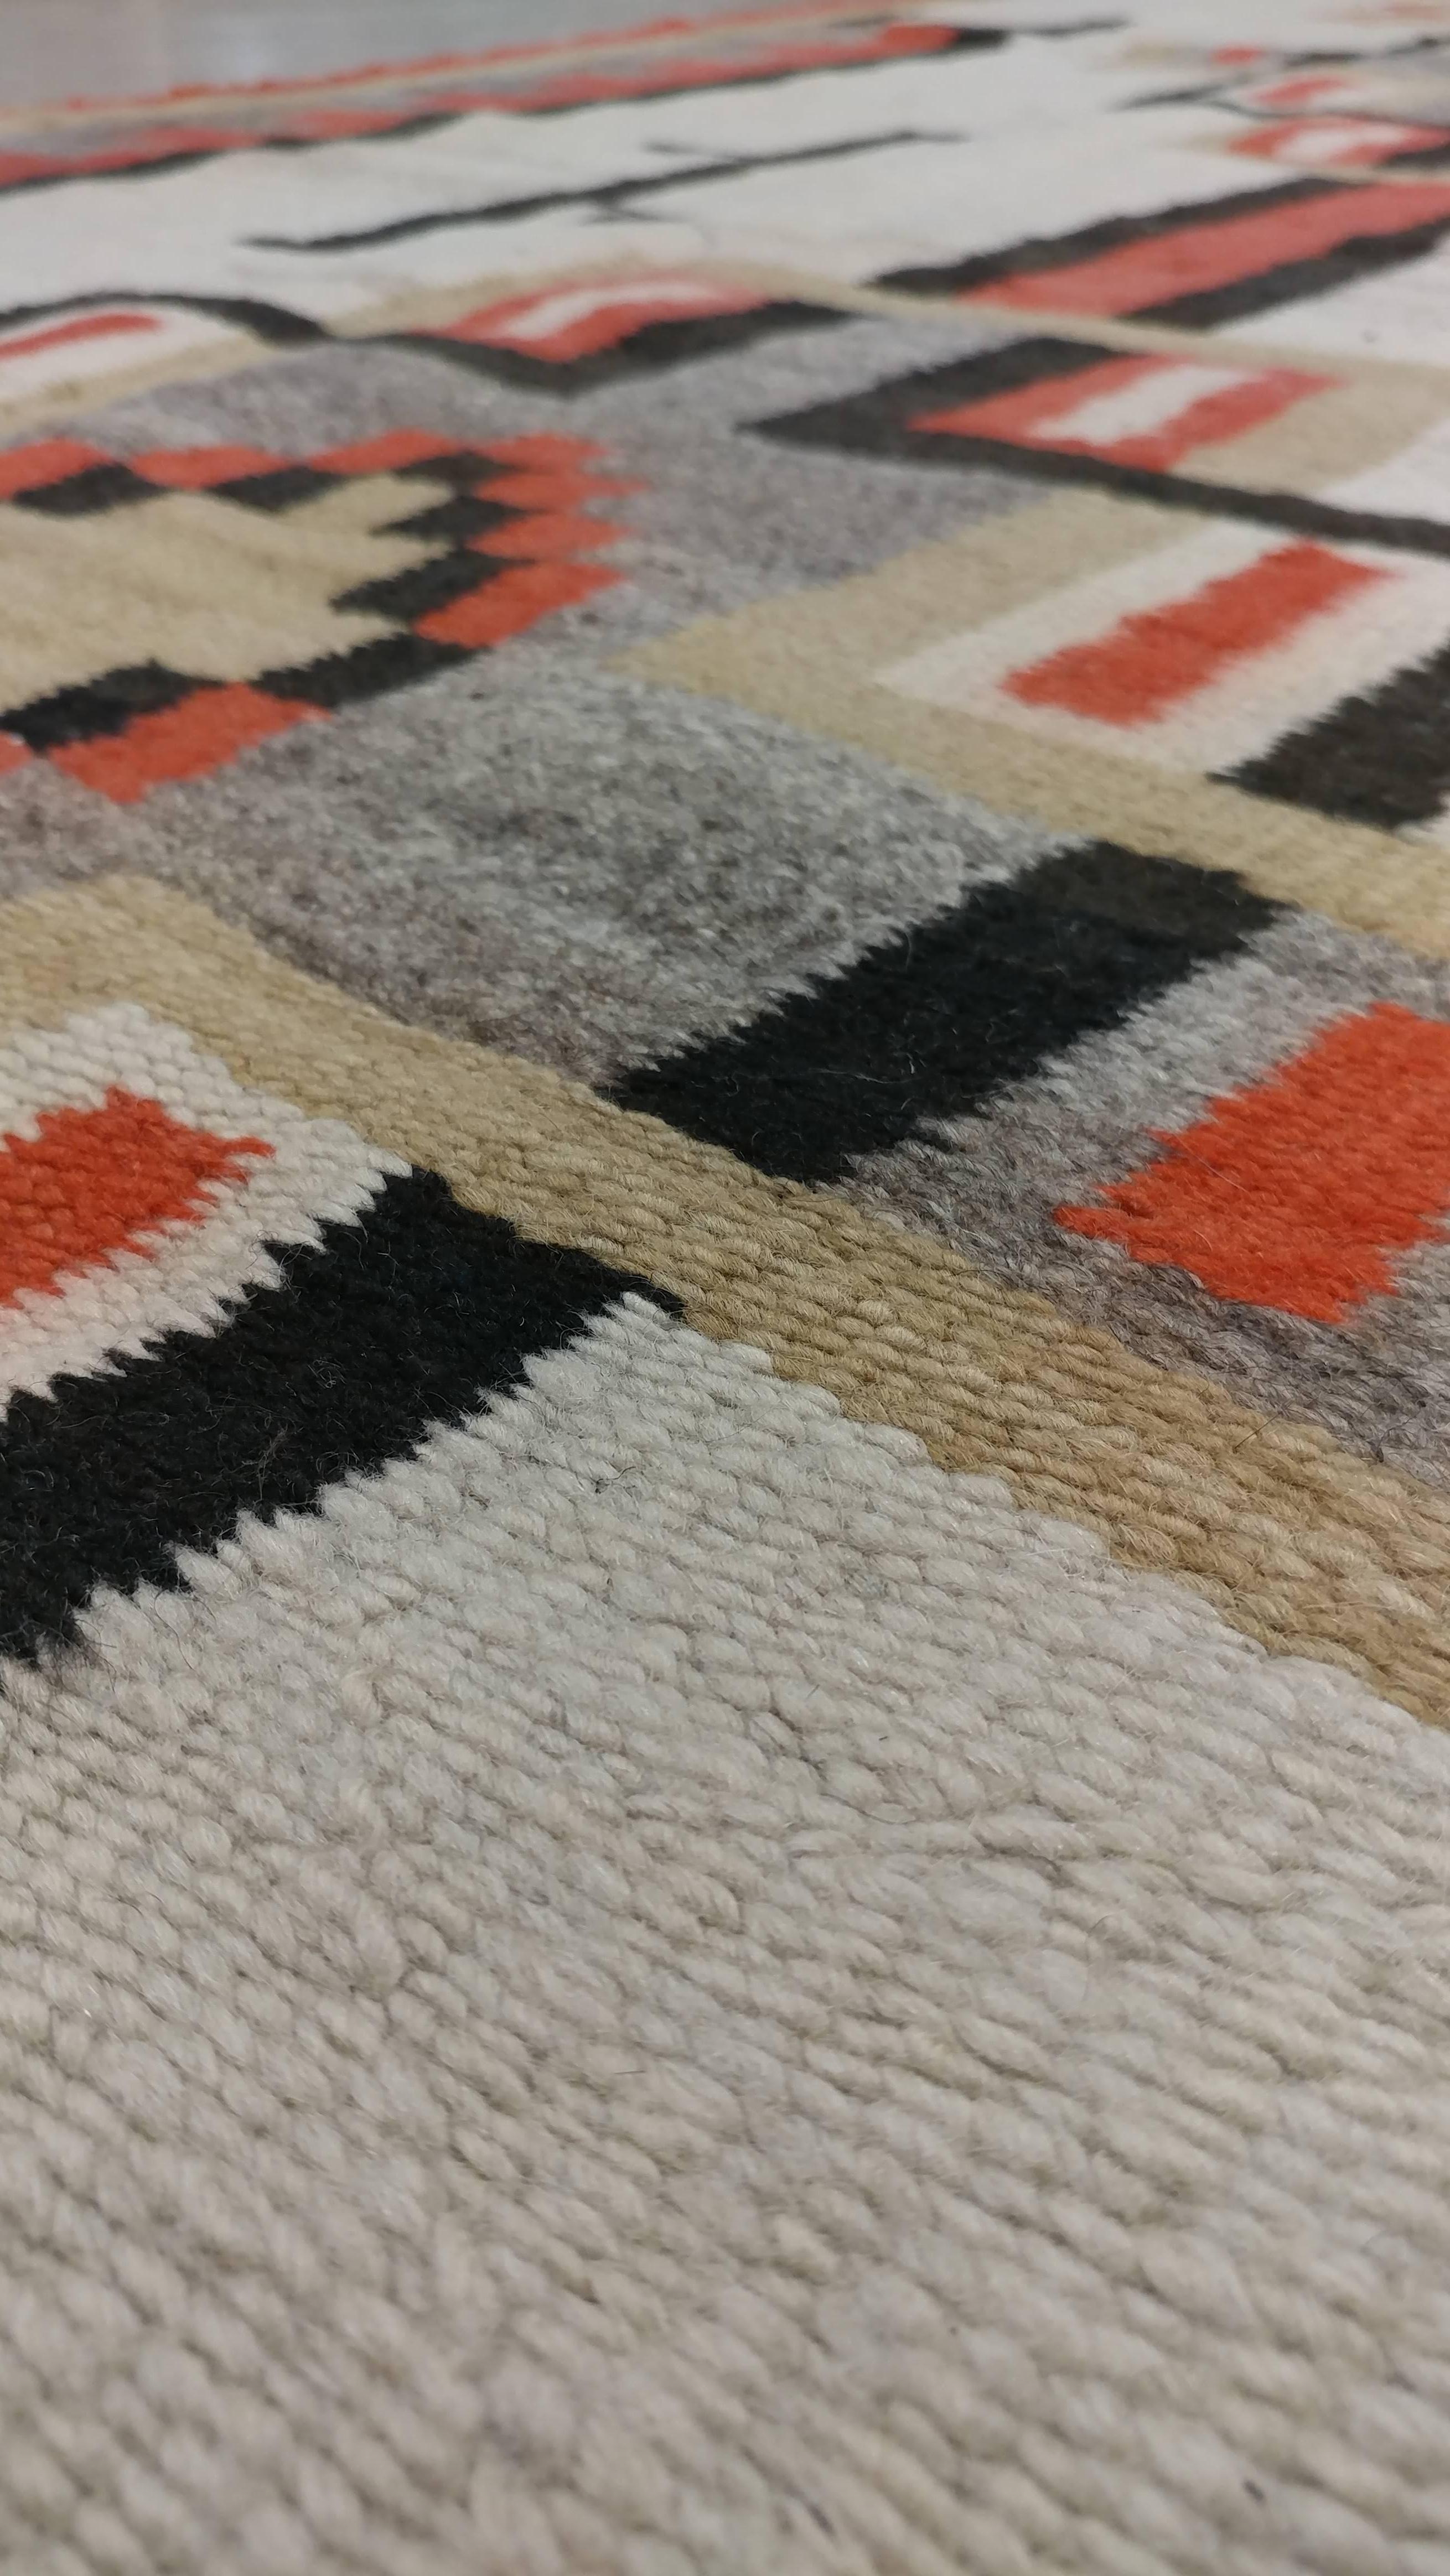 Antique Navajo Carpet, Folk Rug, Handmade Wool, Beige, Coral, Tan, Black 2